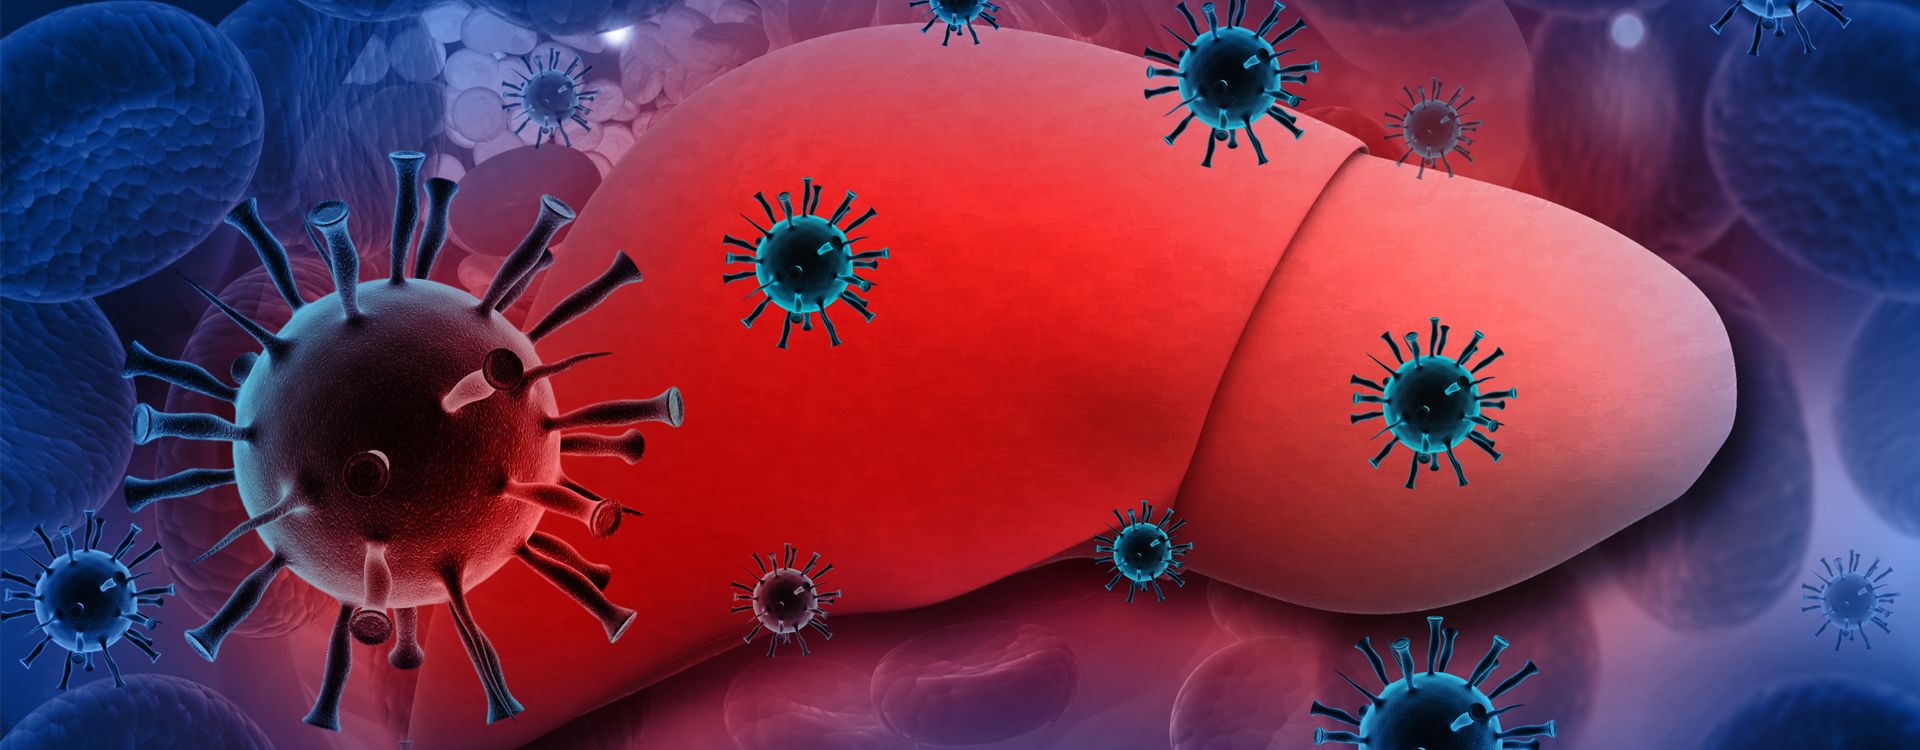 اسباب التهاب الكبد الفيروسي b